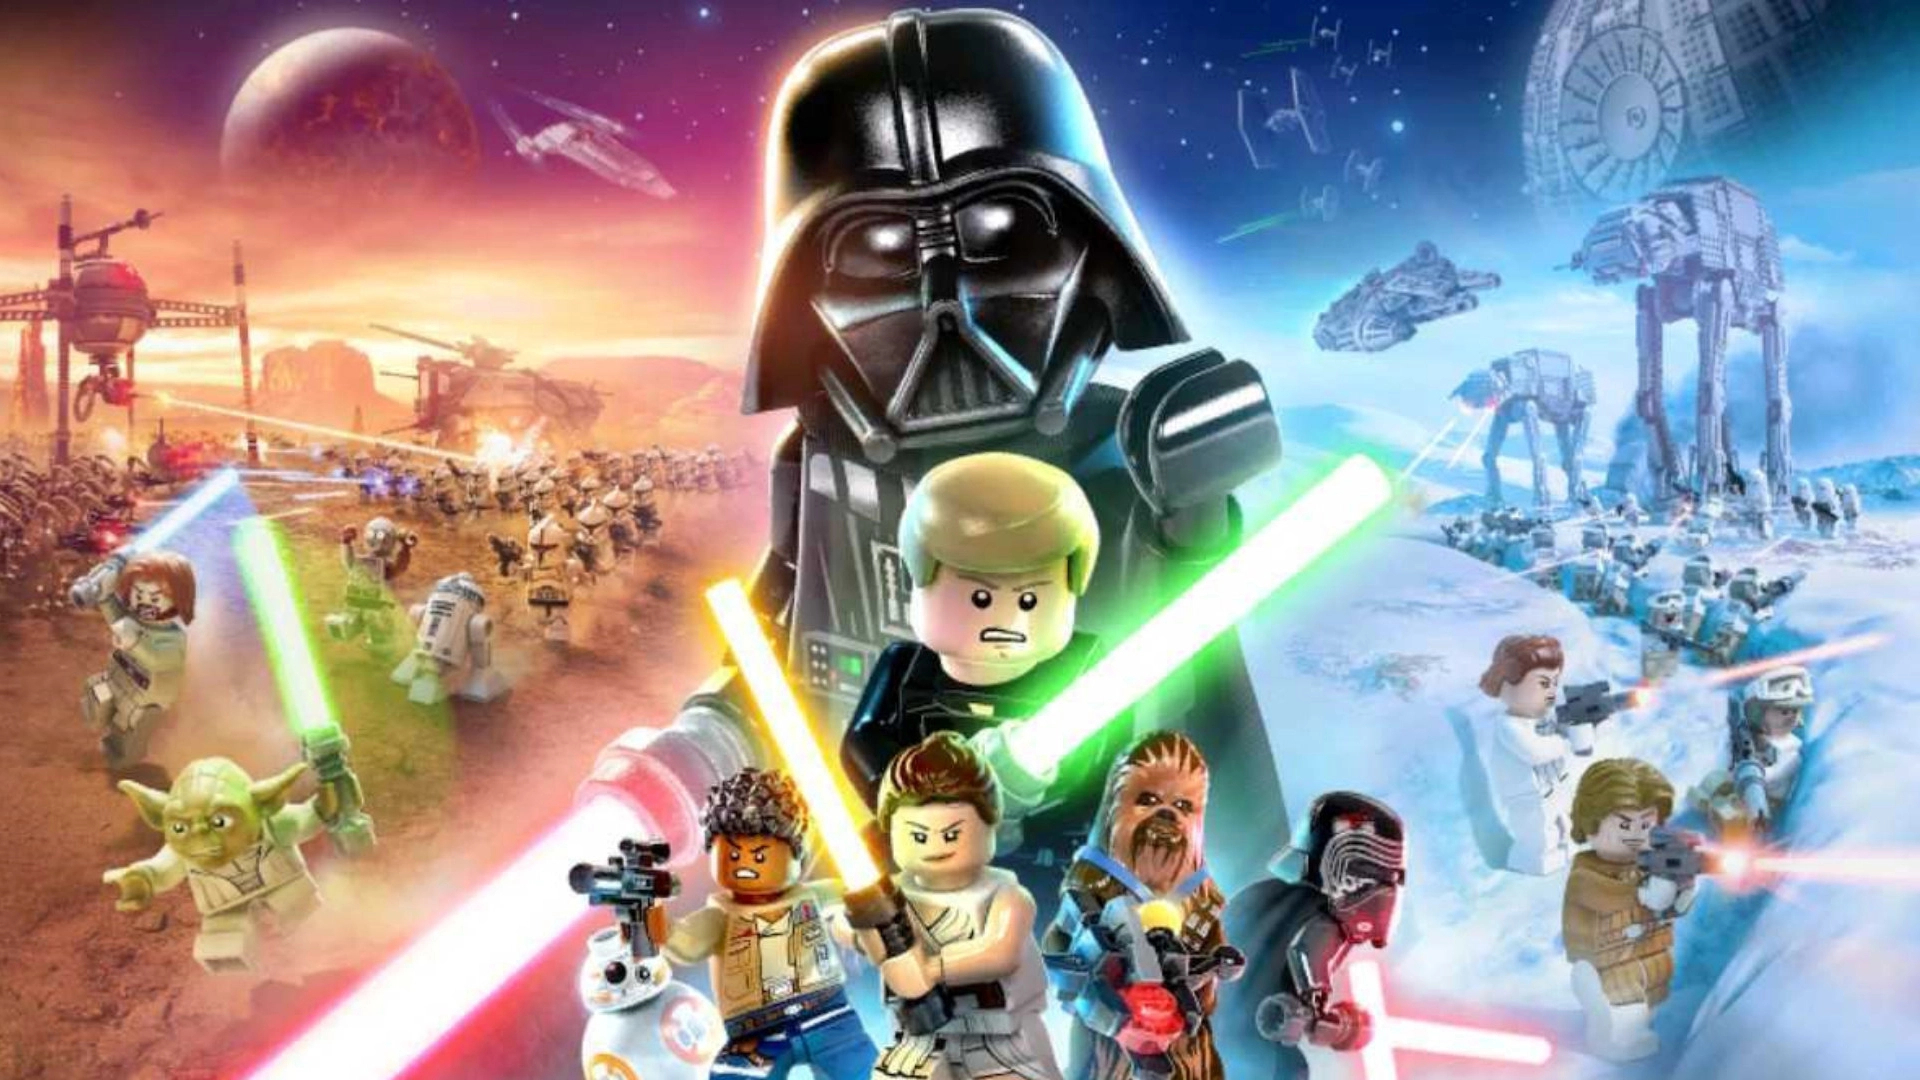 Lego Games - Lego Star Wars: The Skywalker Saga